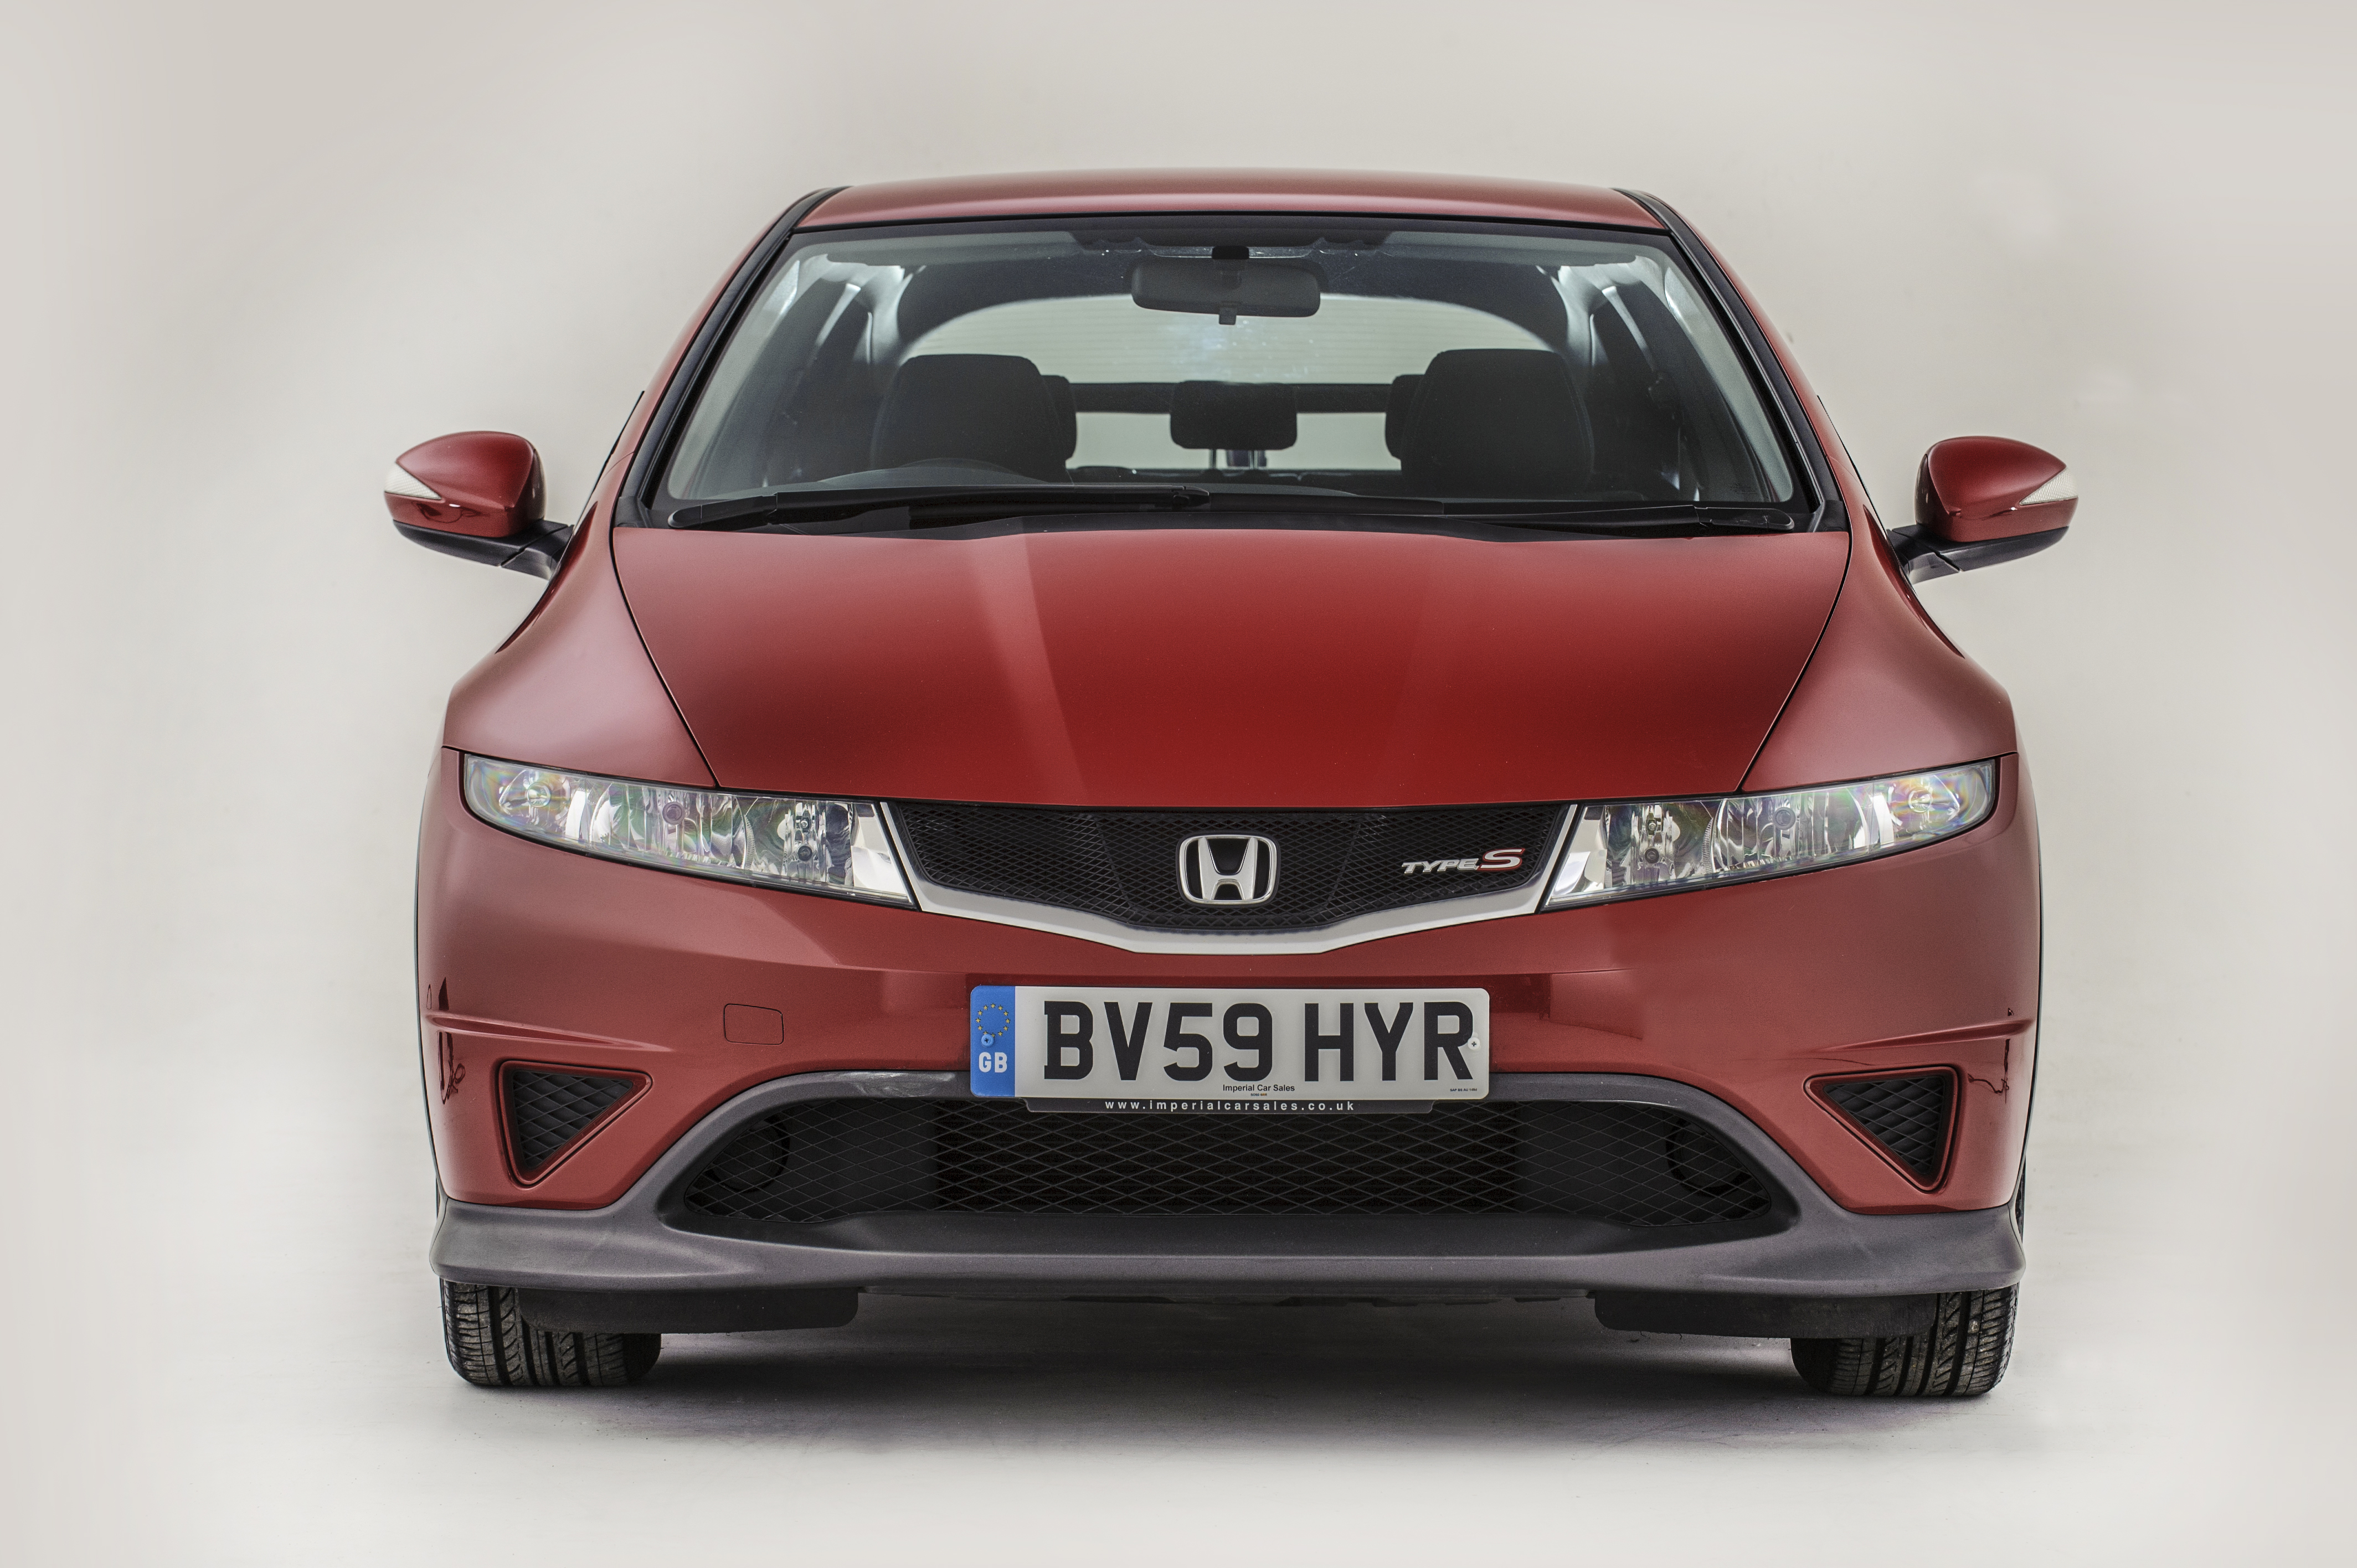 Der Honda Civic Type S bietet ein gutes Preis-Leistungs-Verhältnis und ist ein zuverlässiges Auto